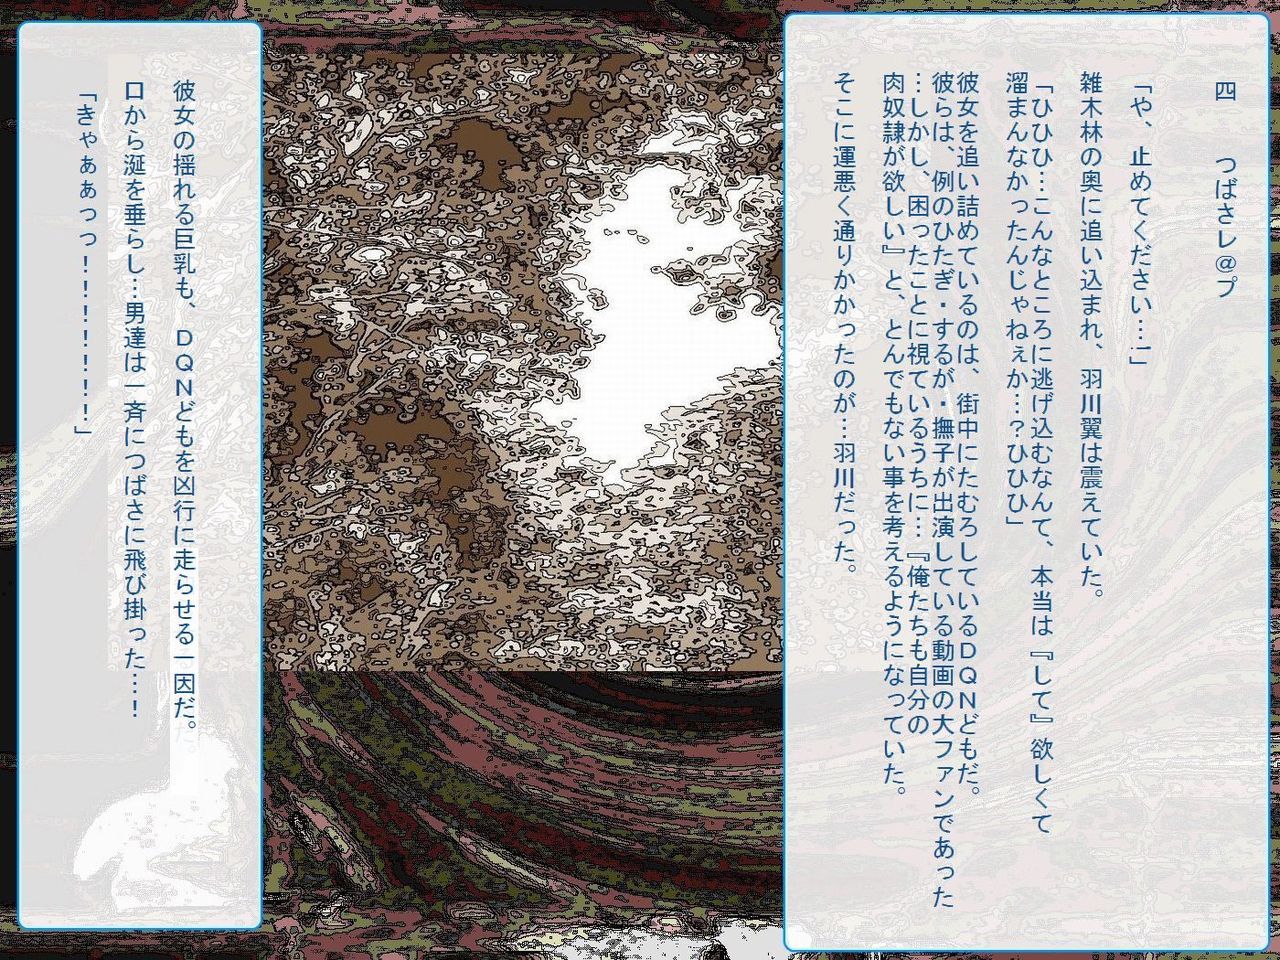 [Teito Bouei Ryodan] RTK Book Ver. 8.4: “‘Tsuki’ Monogatari Saishuu-banashi ‘Tsubasa, soshite... Mayoi maimai’” (<Monogatari> Series) [帝都防衛旅団] RTKBOOK Ver.8.4 「『憑き』物語 最終話 『ひ〇ぎ倶楽部』」 (〈物語〉シリーズ) 44